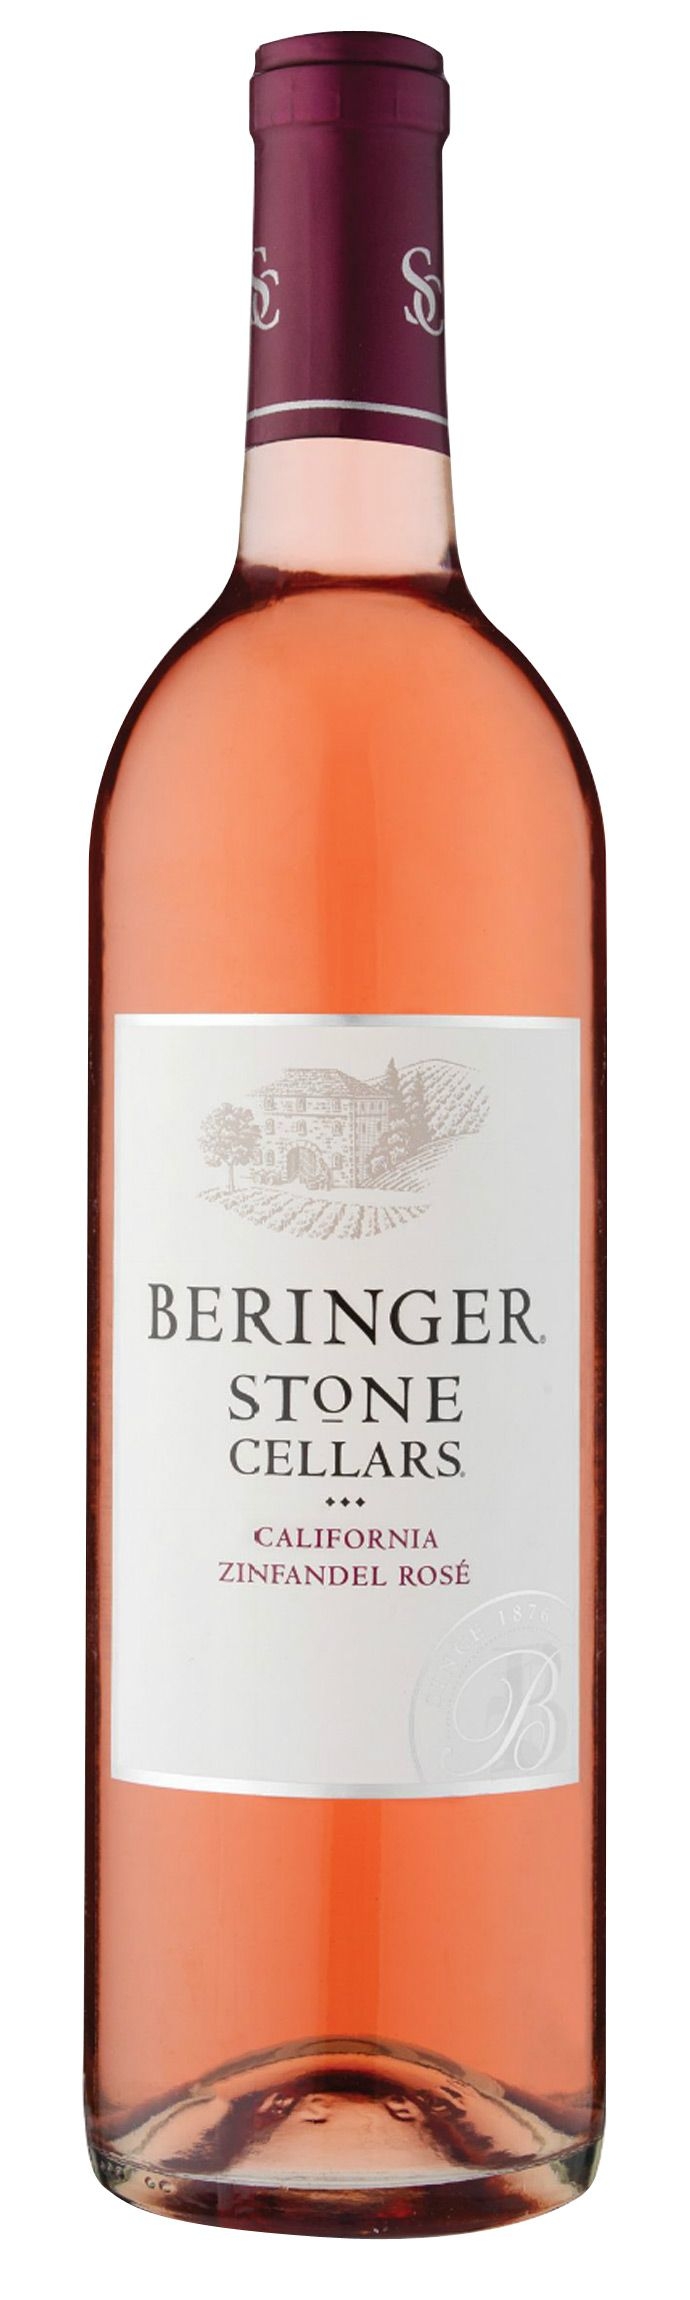 2012er Beringer Stone Cellars Zinfandel Rosé